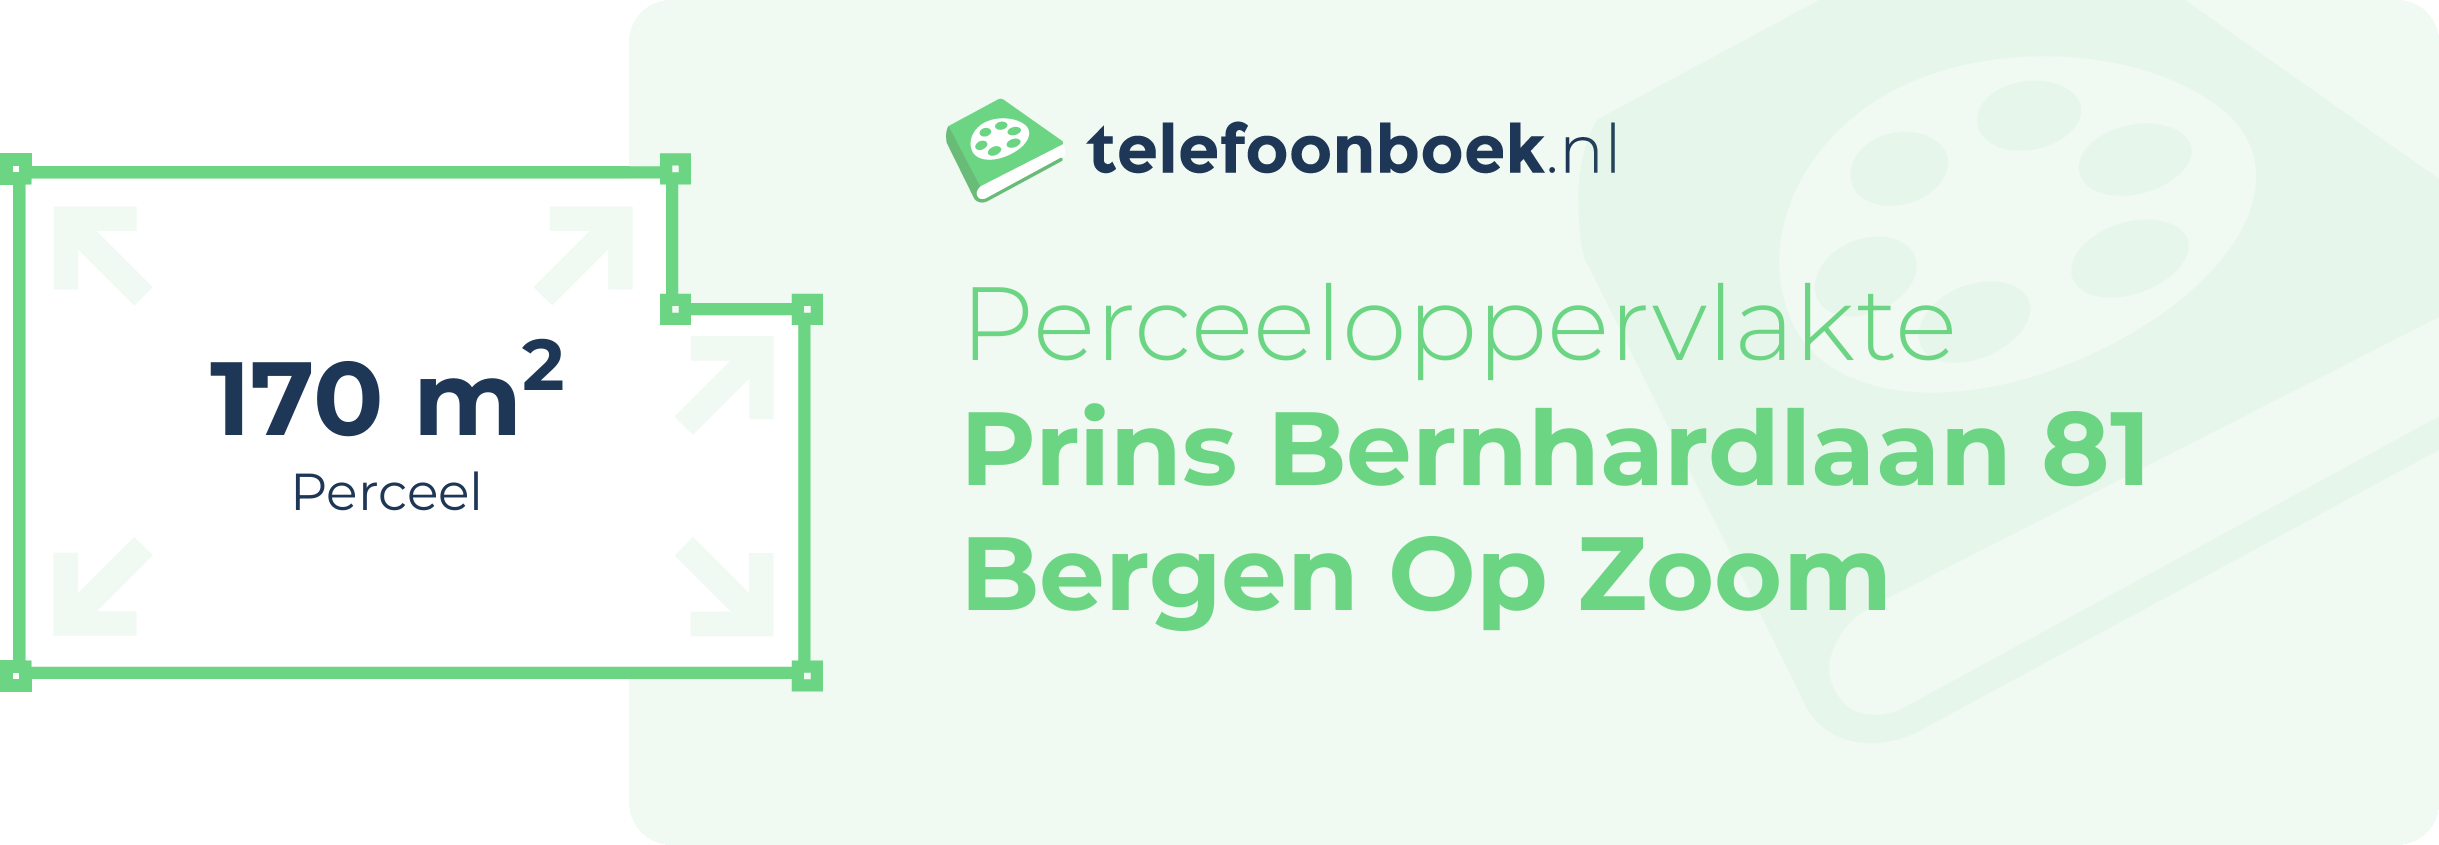 Perceeloppervlakte Prins Bernhardlaan 81 Bergen Op Zoom